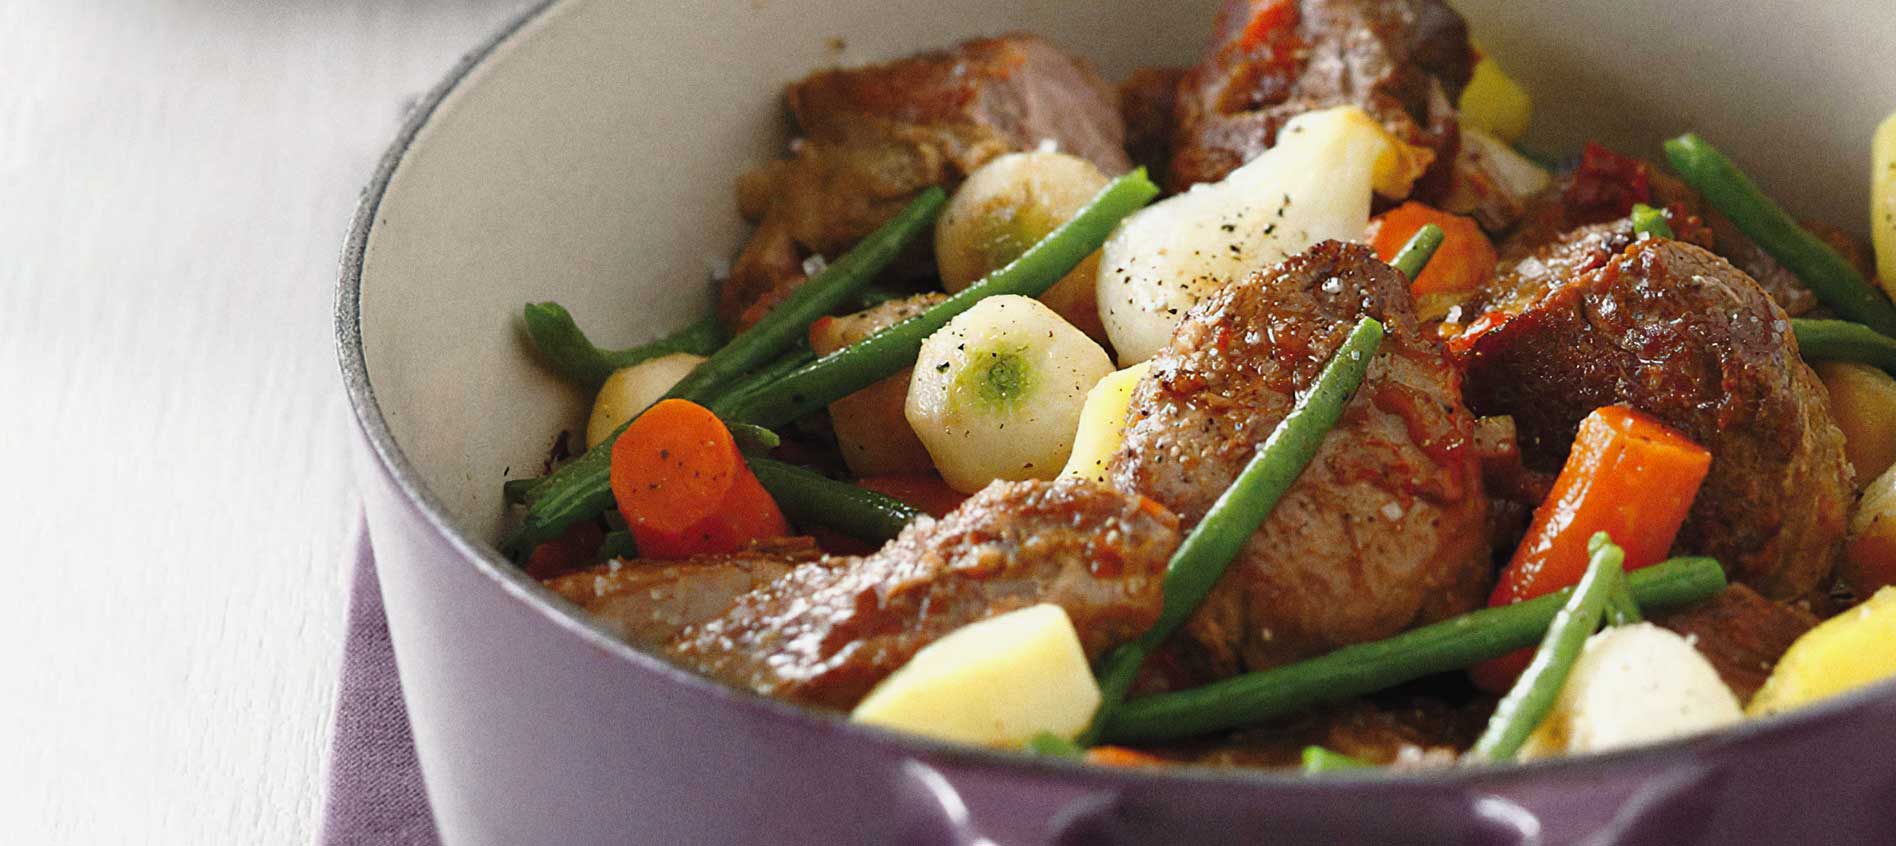 SPRING MENU lamb stew with spring vegetables